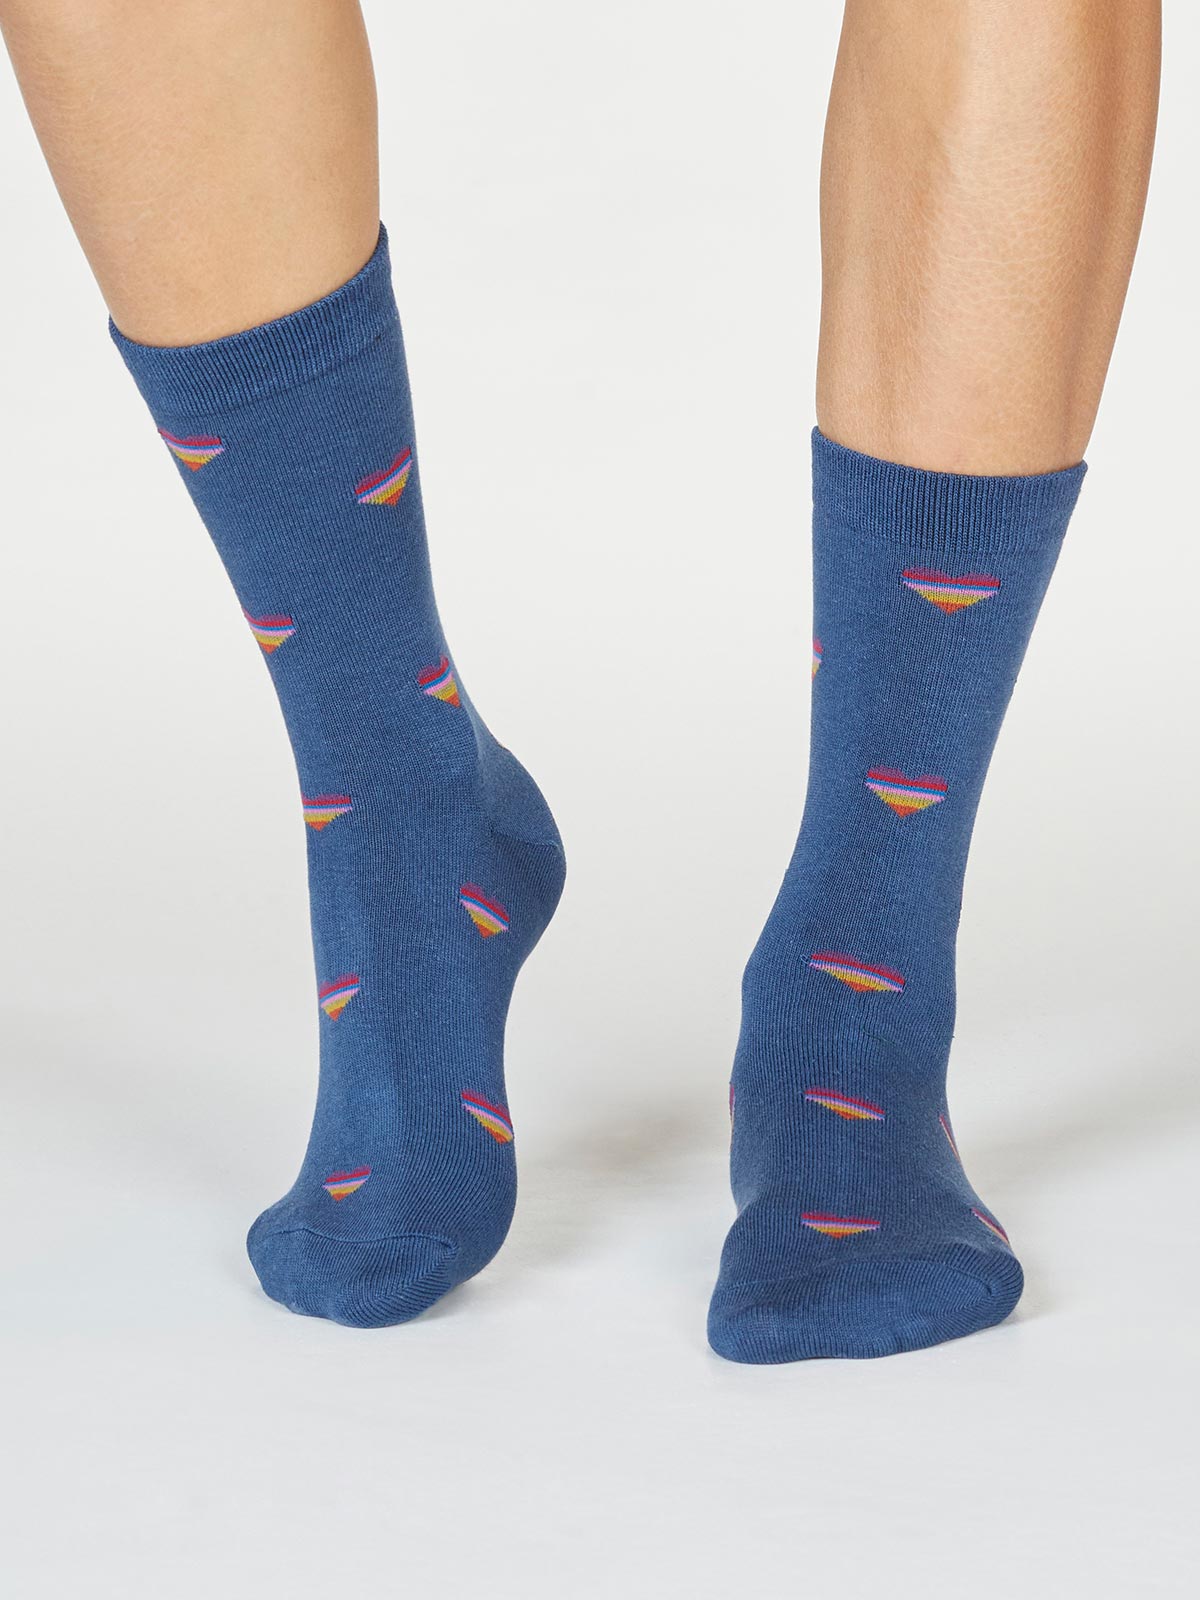 Damen-Socken Cretia Heart Stripe in Blue Slate 